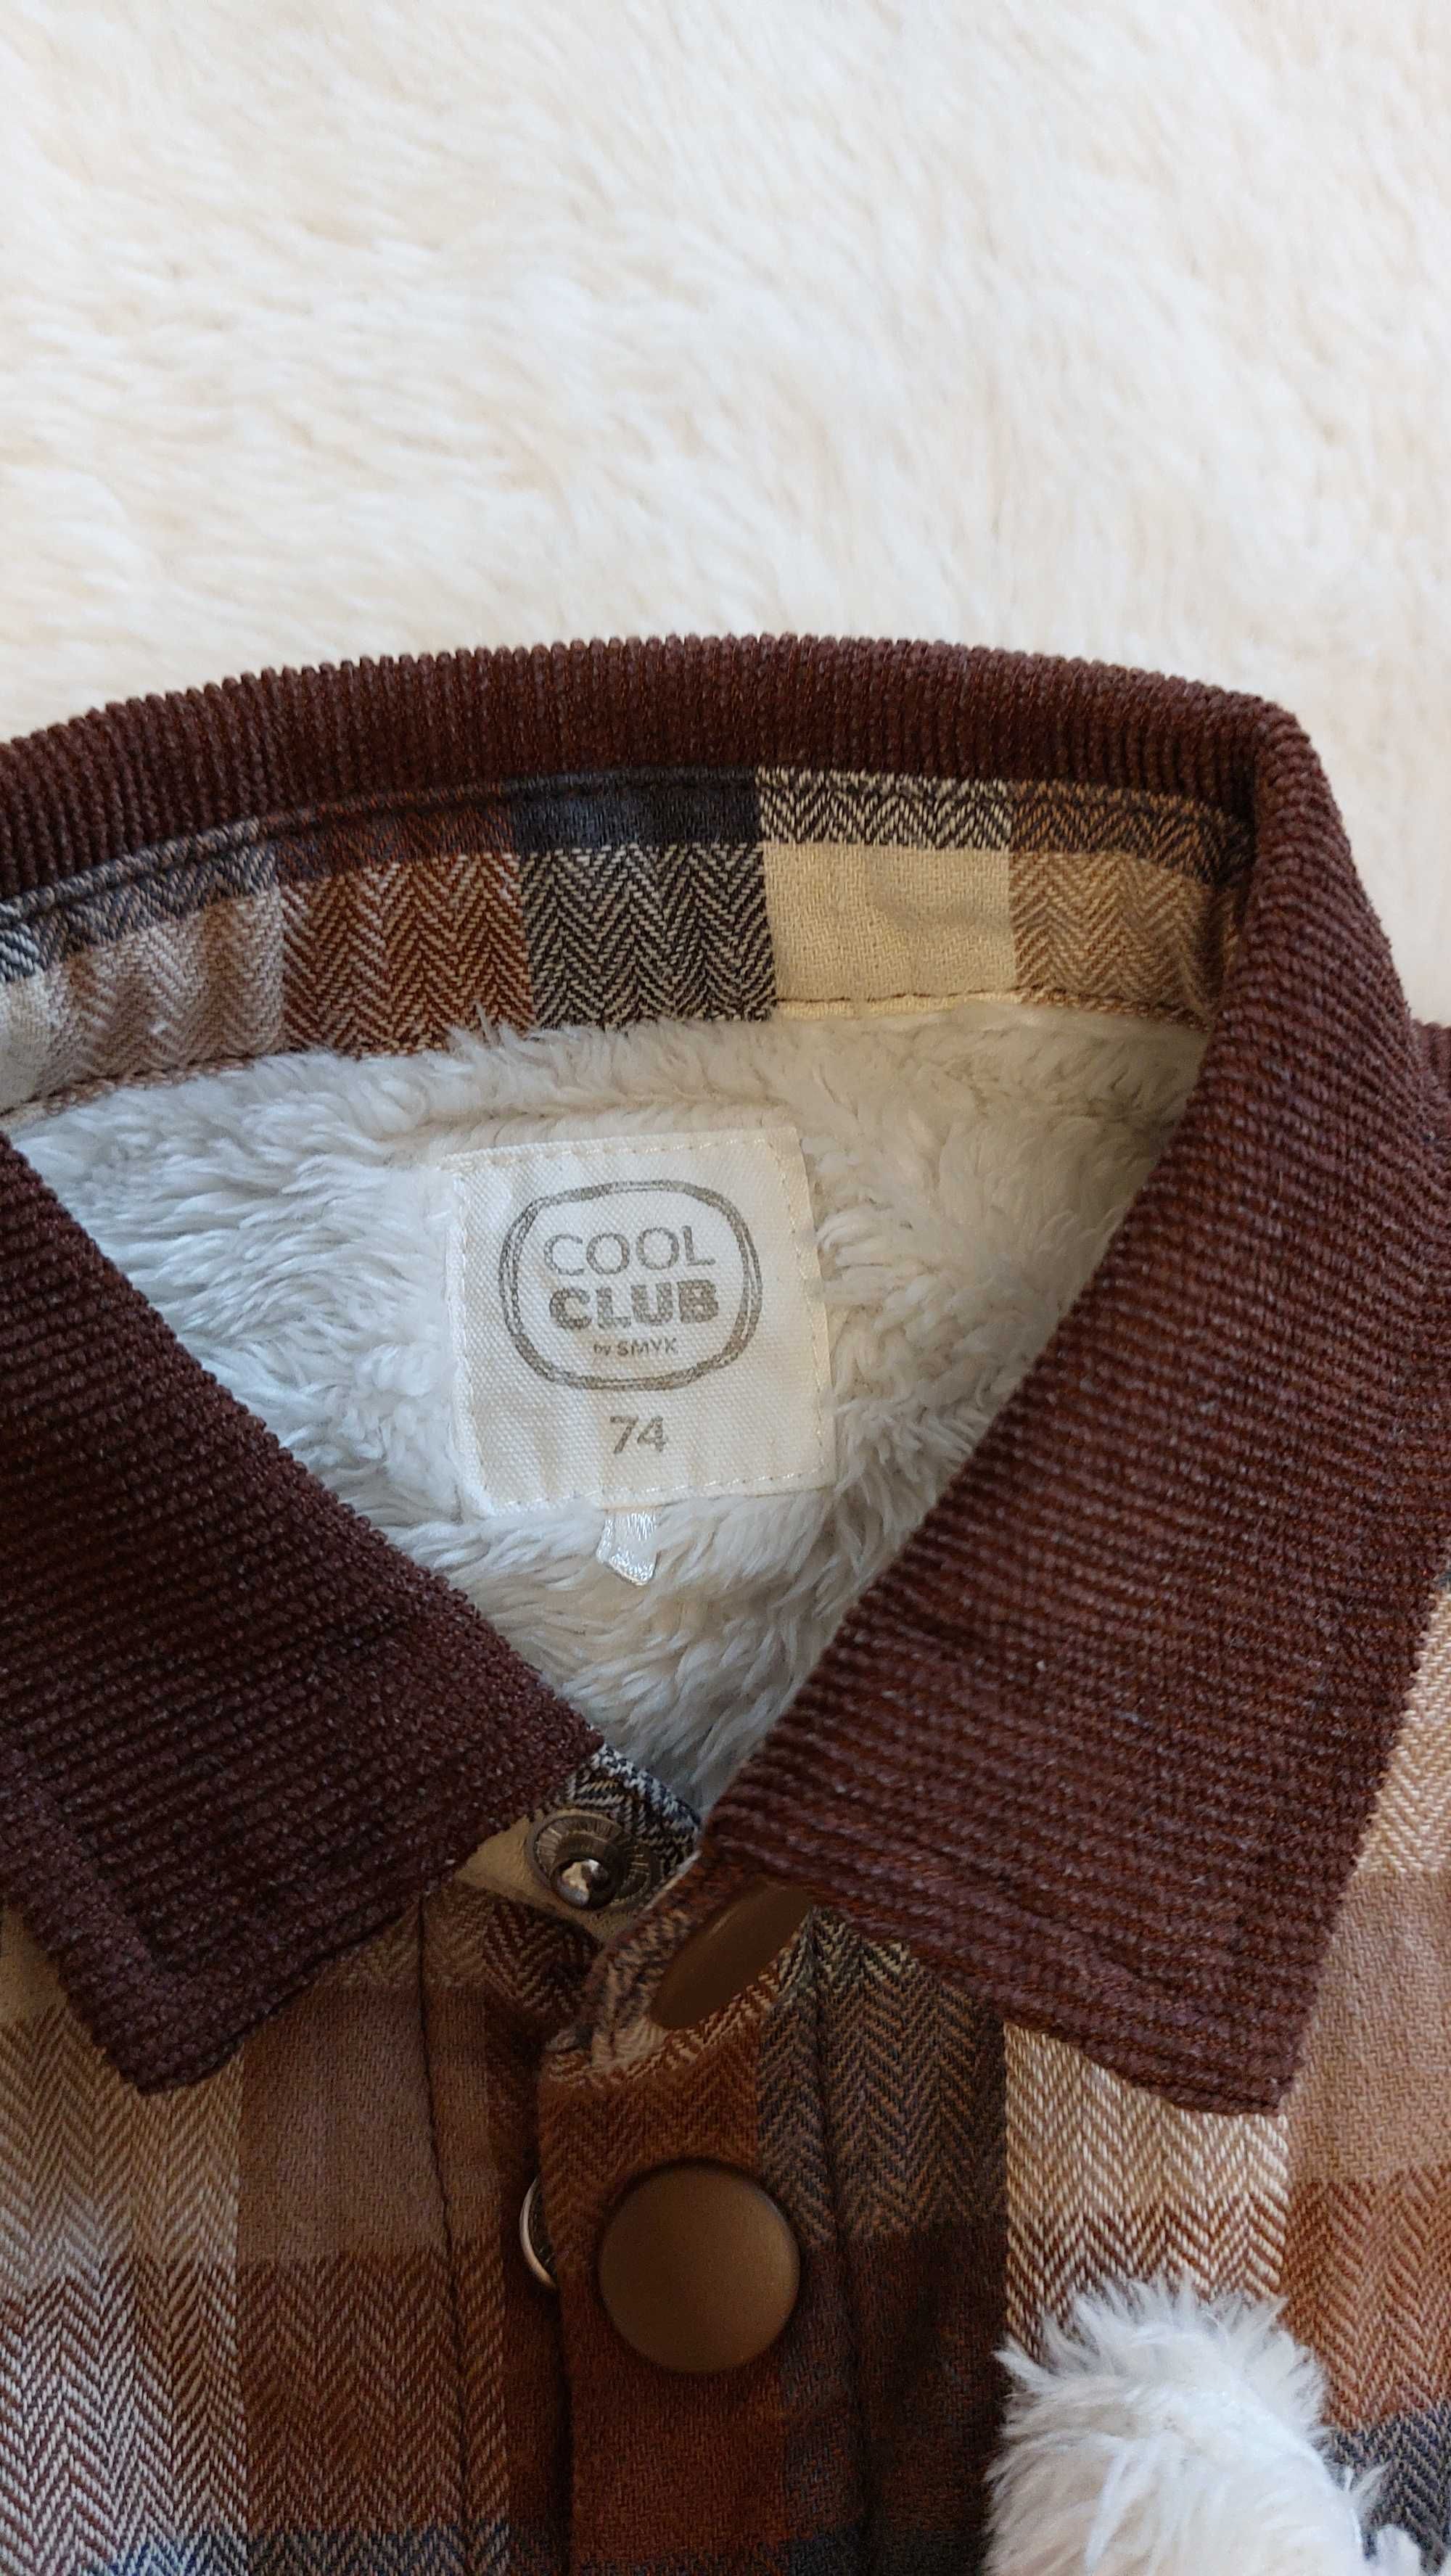 Kurtka zimowa COOL CLUB , zima spodnie smyk sweterek paka ubrań 74